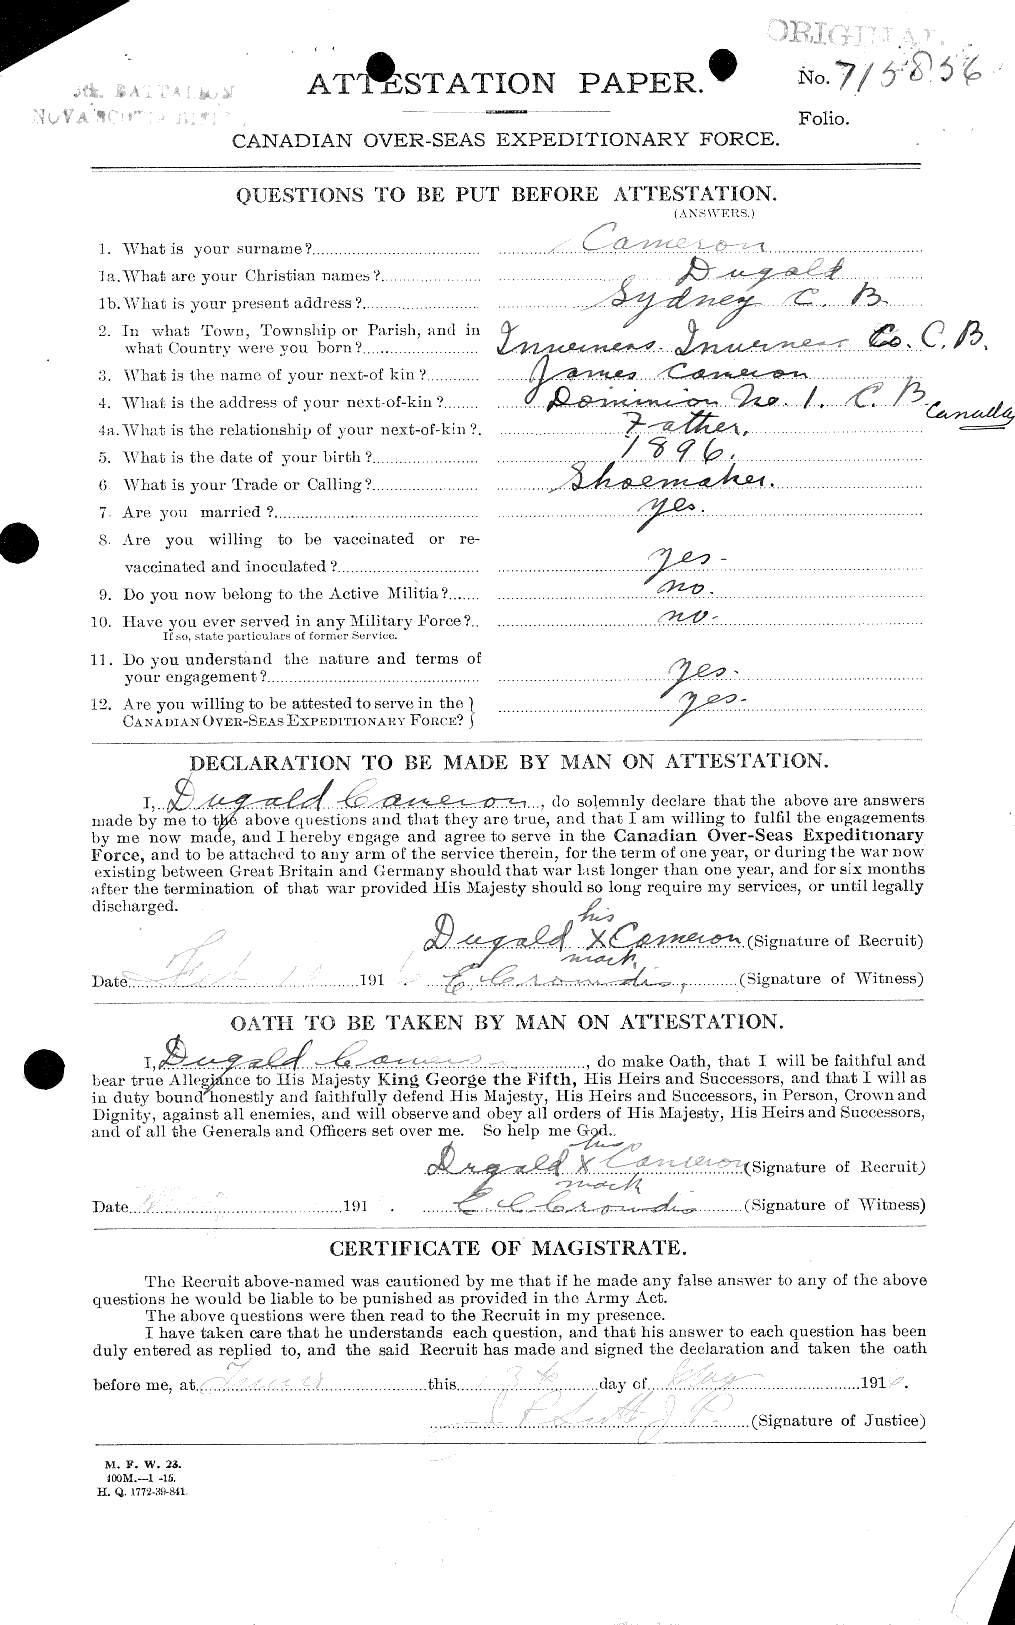 Dossiers du Personnel de la Première Guerre mondiale - CEC 006499a